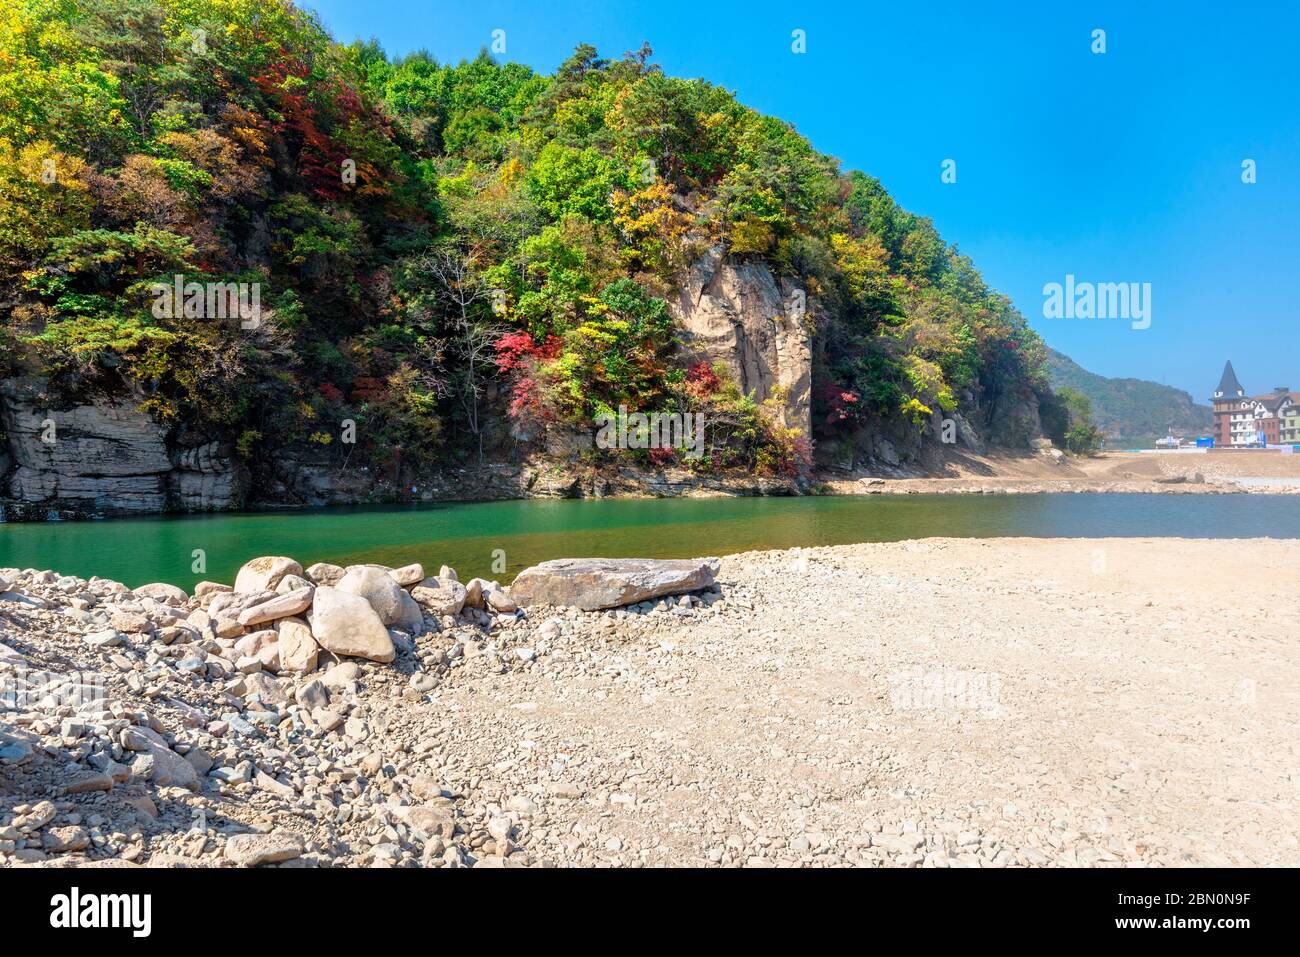 Pavimento rocoso vacío y paisaje natural limpio y cómodo de otoño. Foto de stock